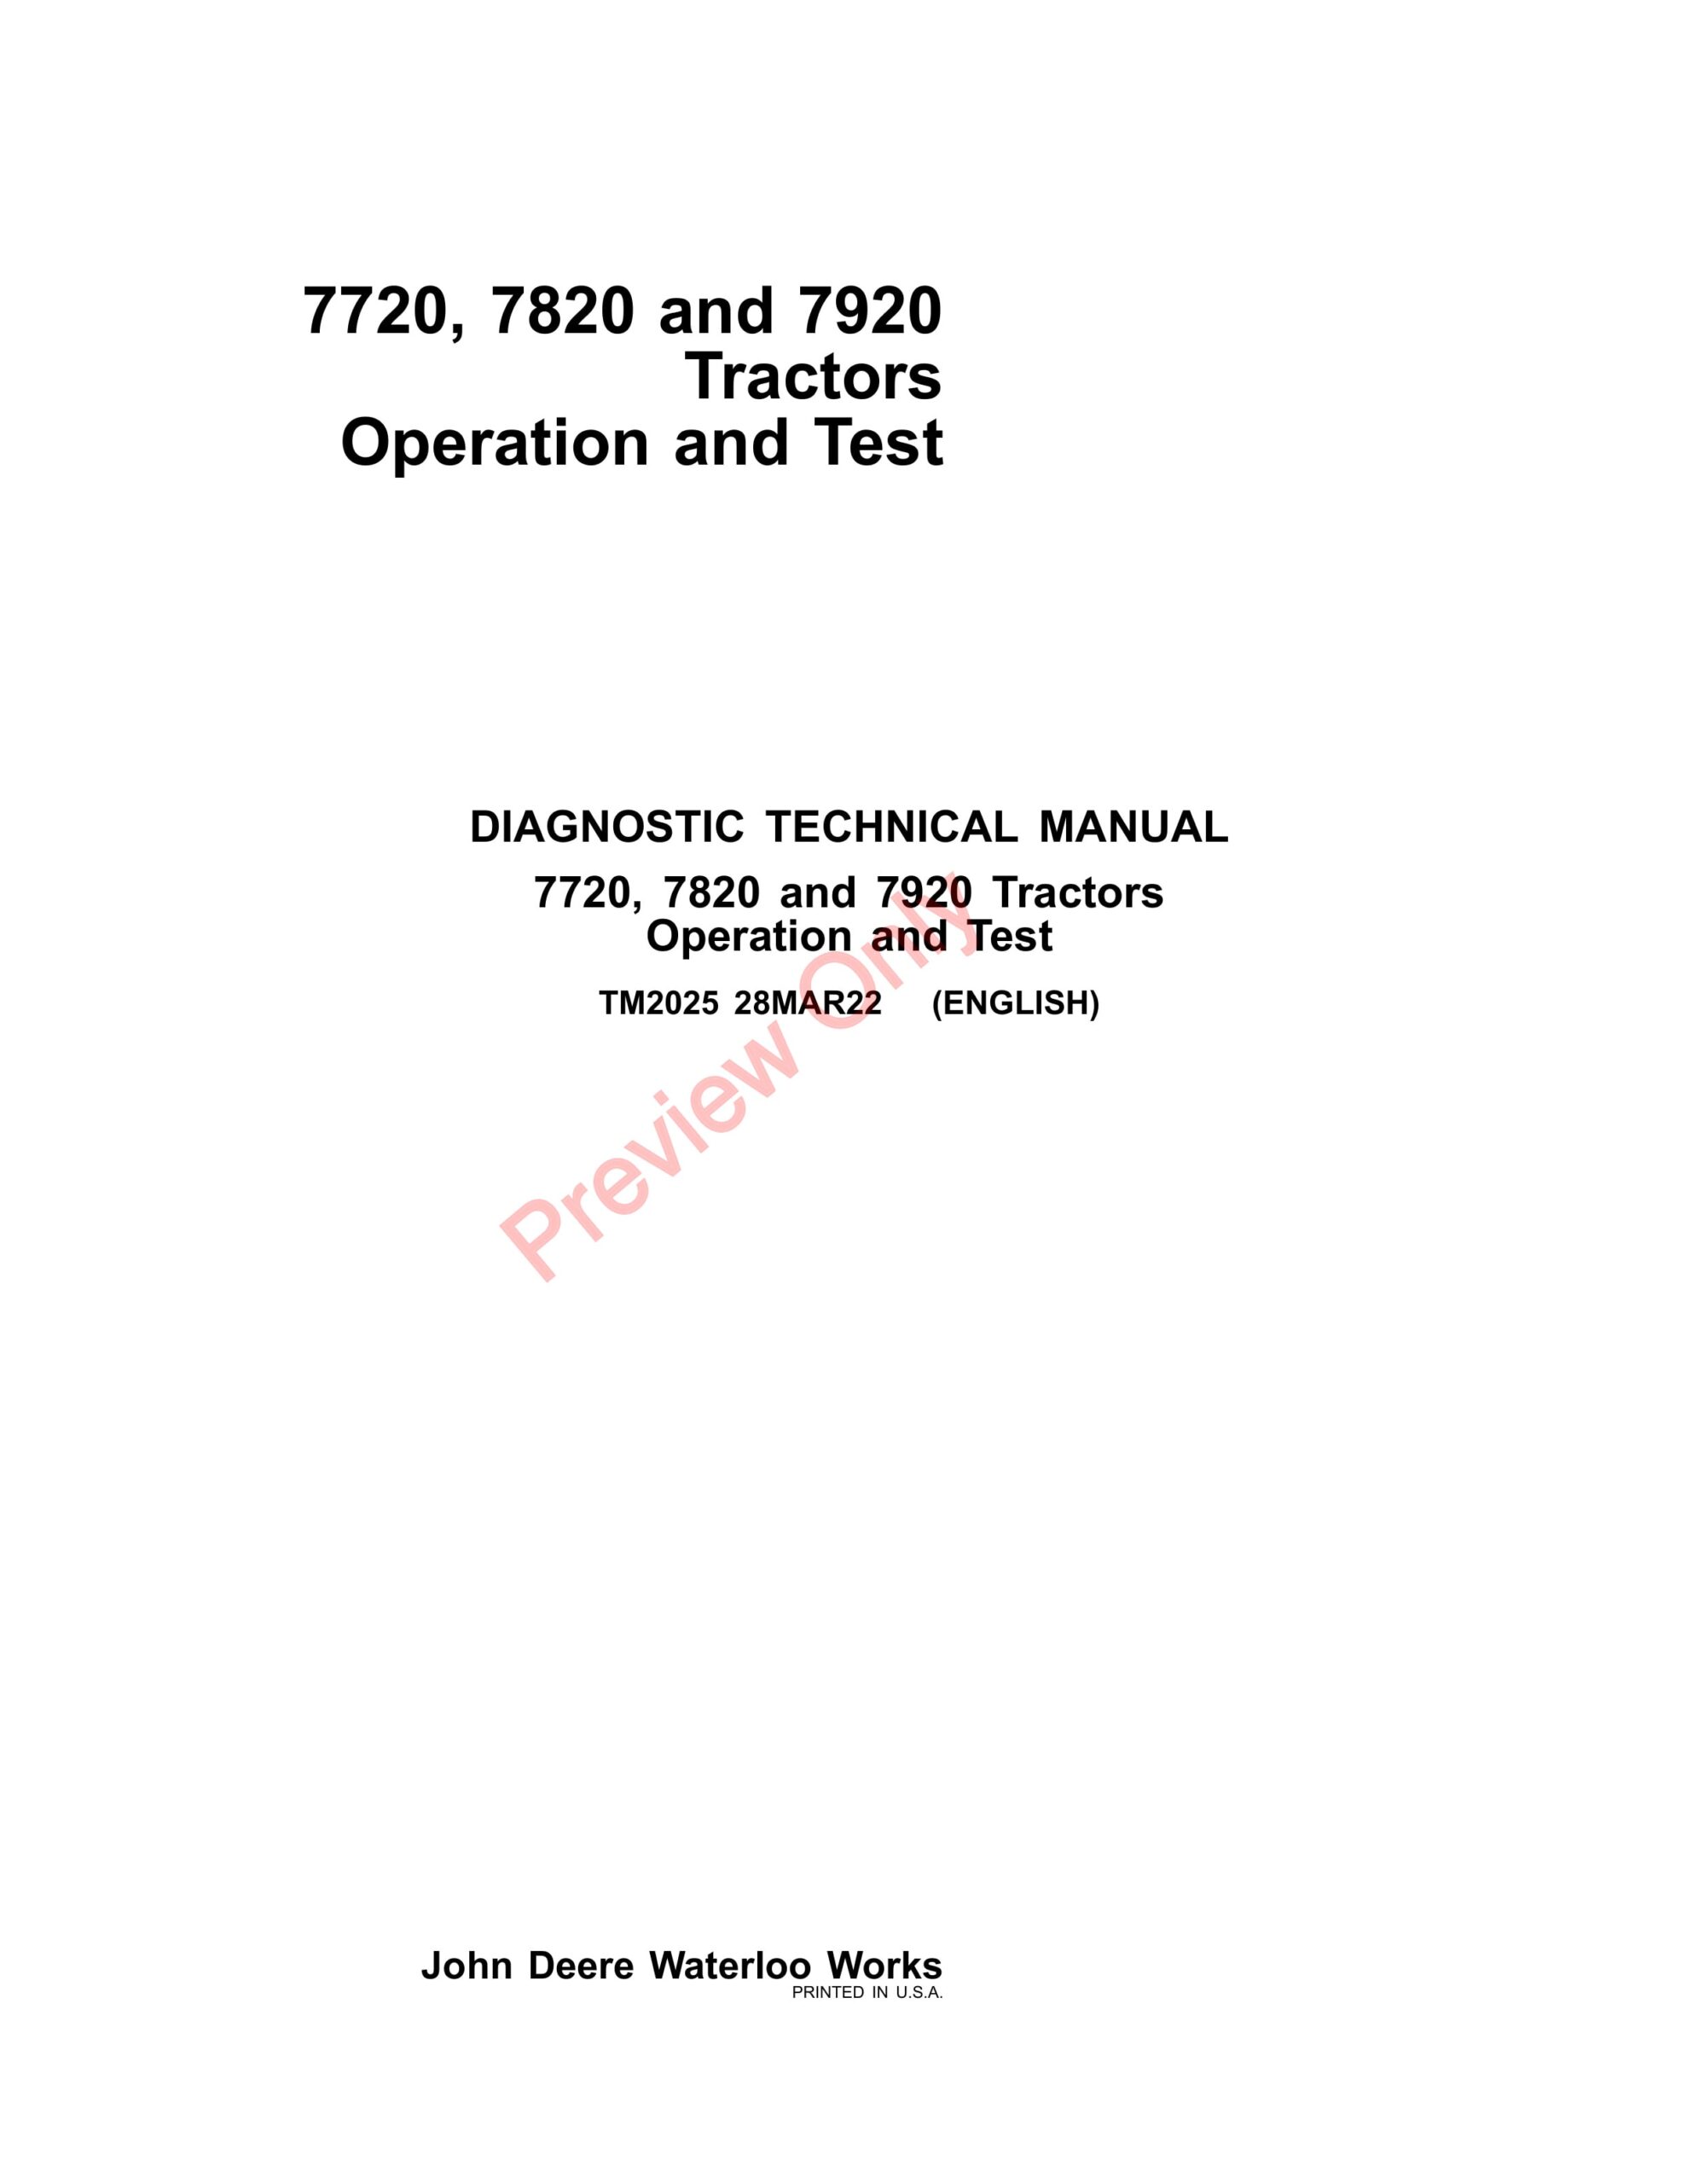 John Deere 7720, 7820 and 7920 Tractors Diagnostic Technical Manual TM2025 28MAR22-1